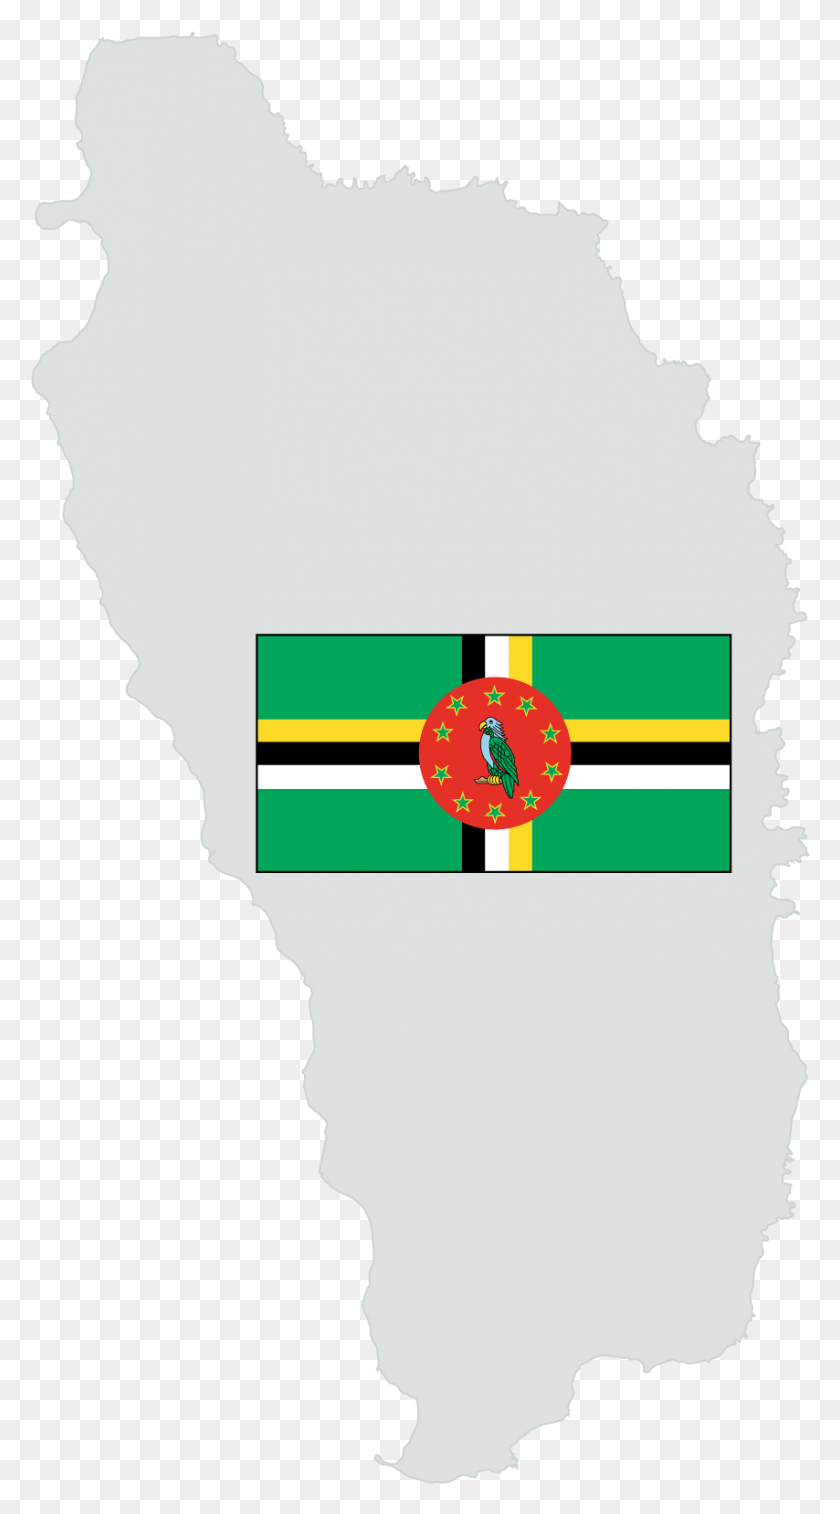 854x1592 Descargar Formulario De Búsqueda Del Himno Nacional De Dominica, Persona, Humano, Regalo Hd Png